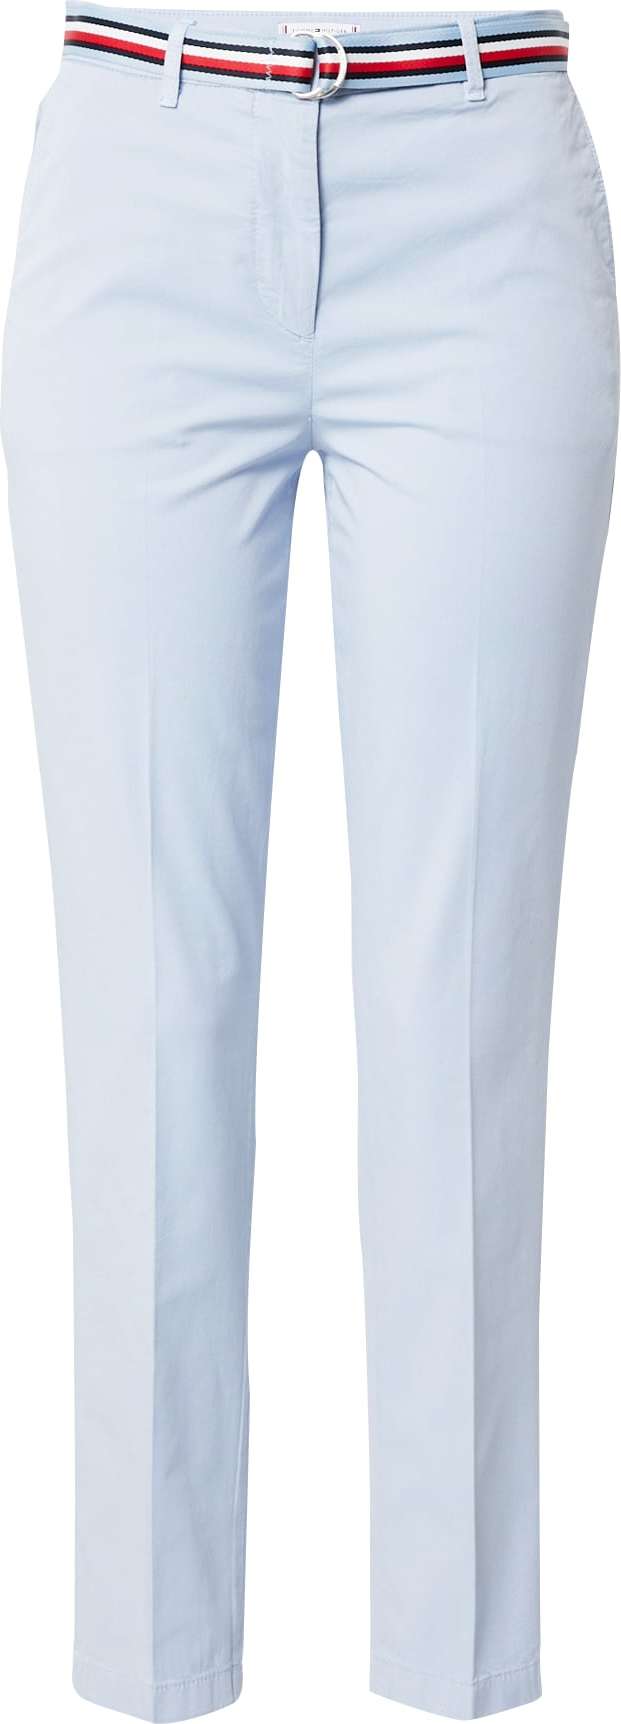 TOMMY HILFIGER Chino kalhoty 'Hailey' světlemodrá / námořnická modř / bílá / červená